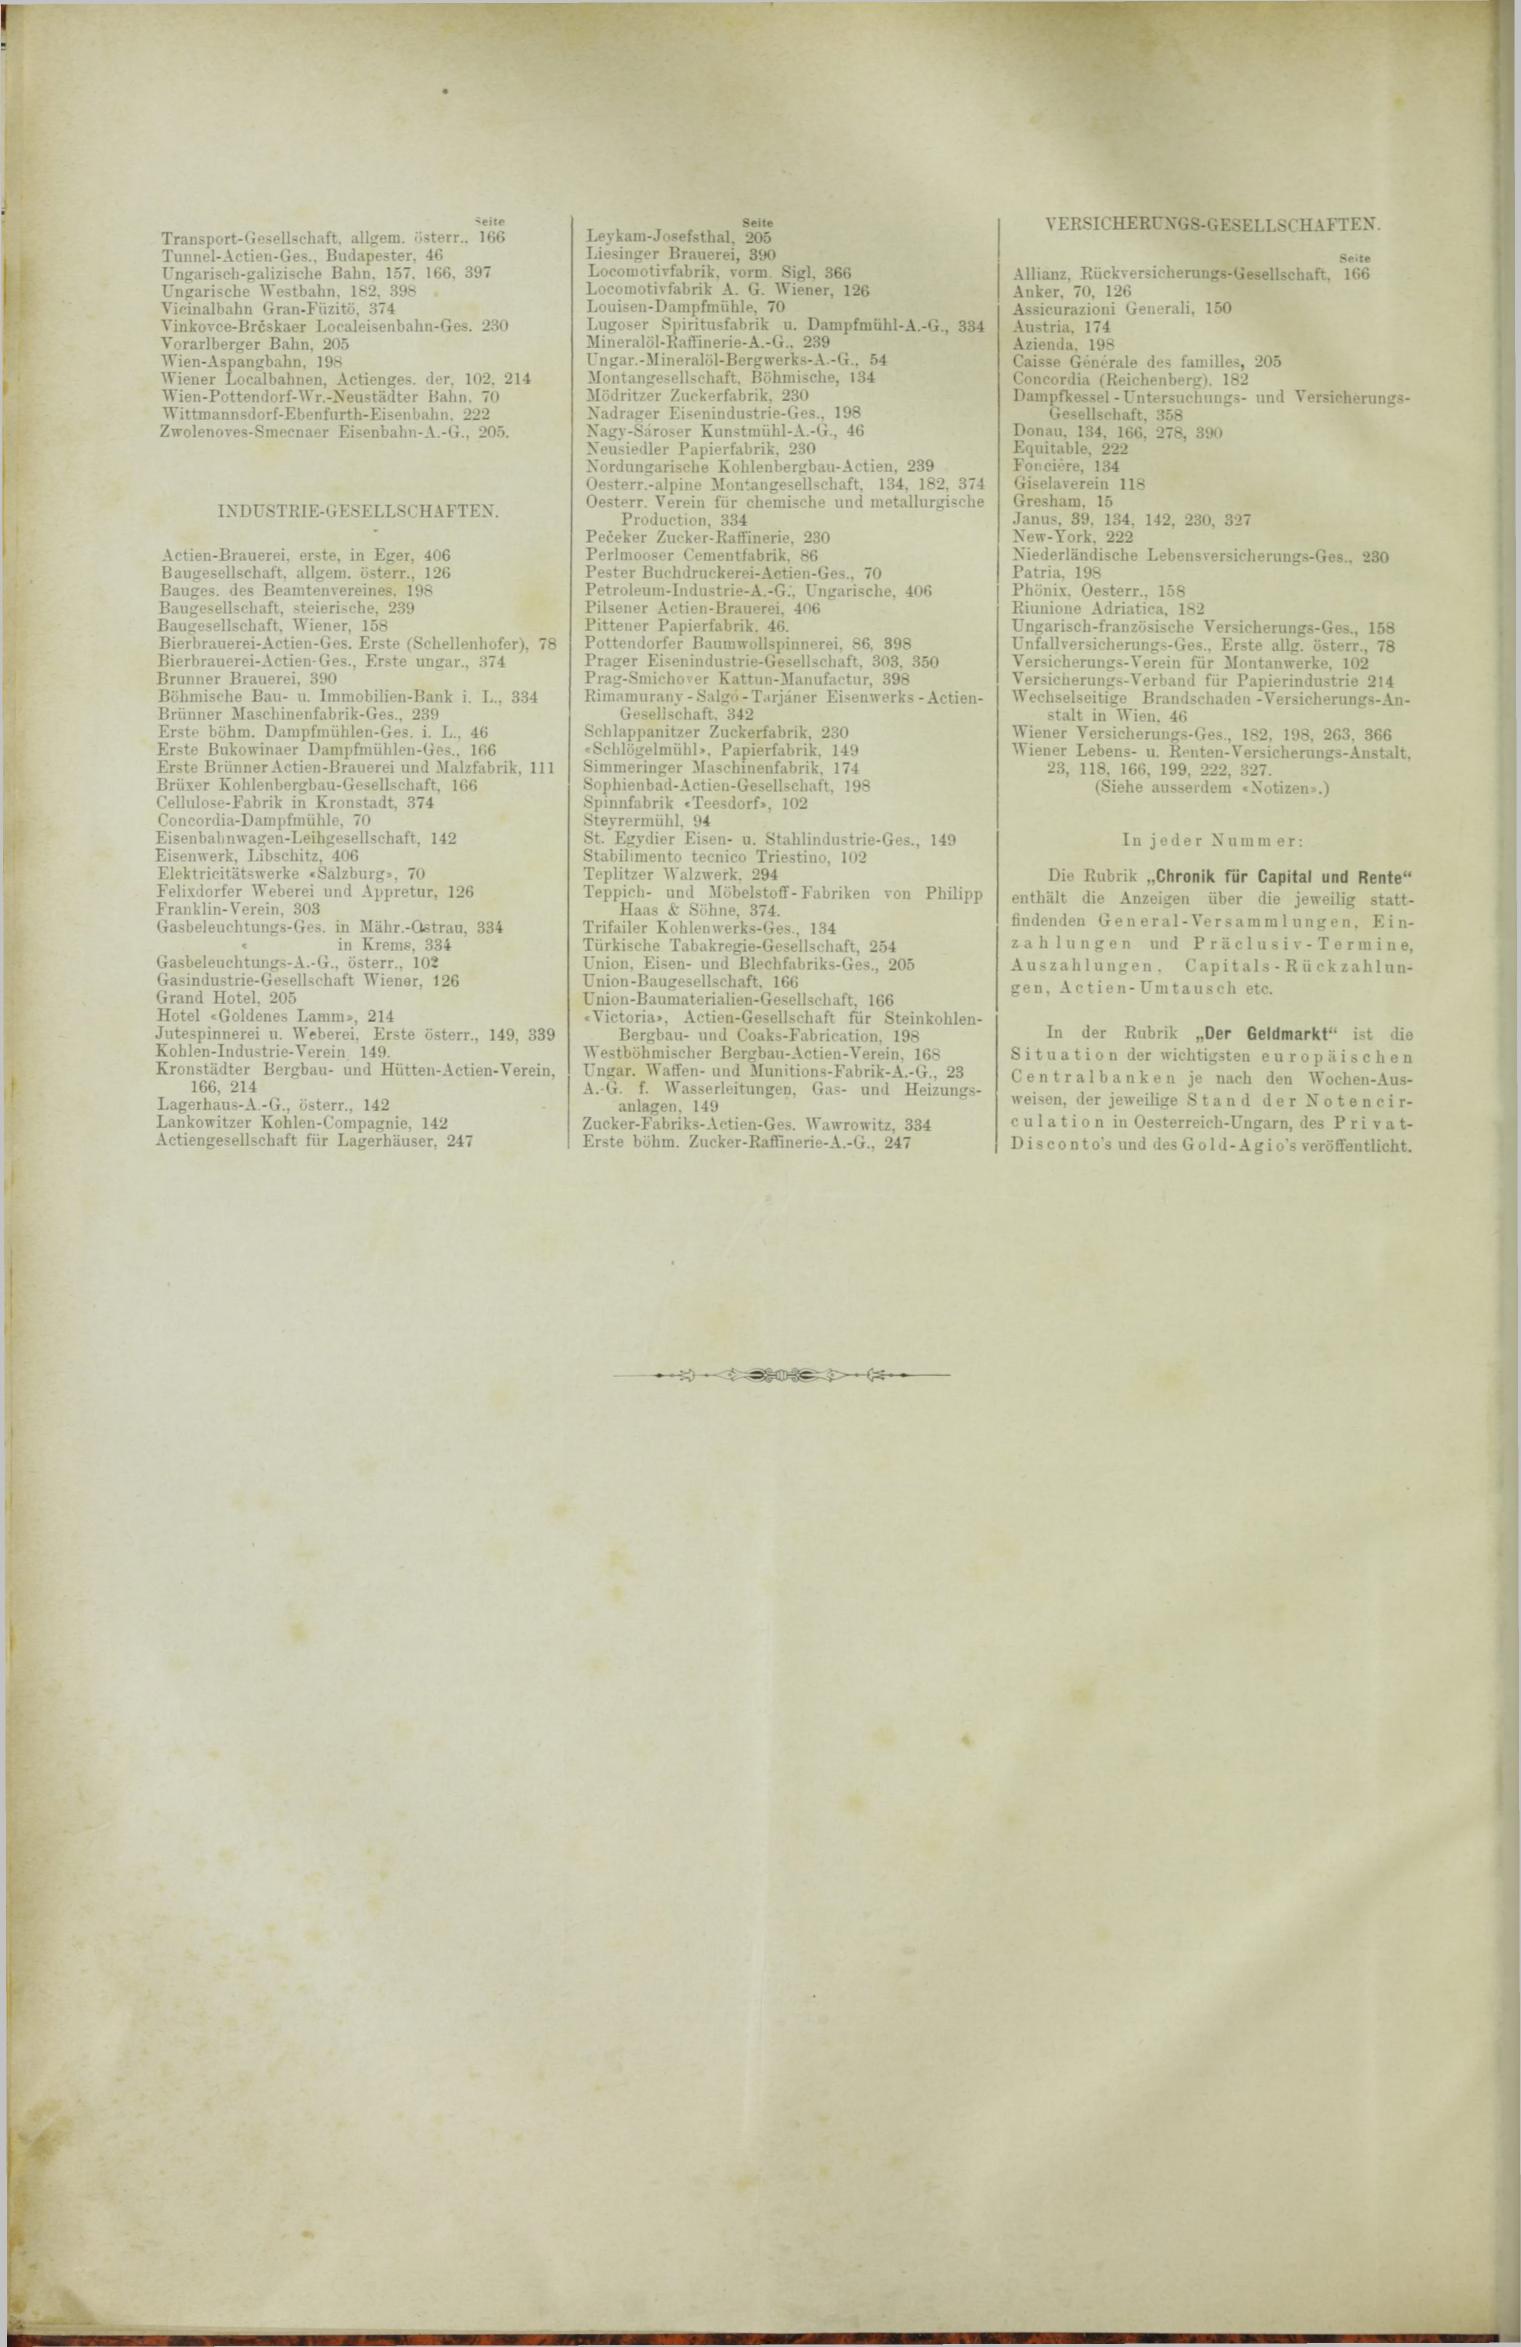 Der Tresor 02.08.1888 - Seite 12